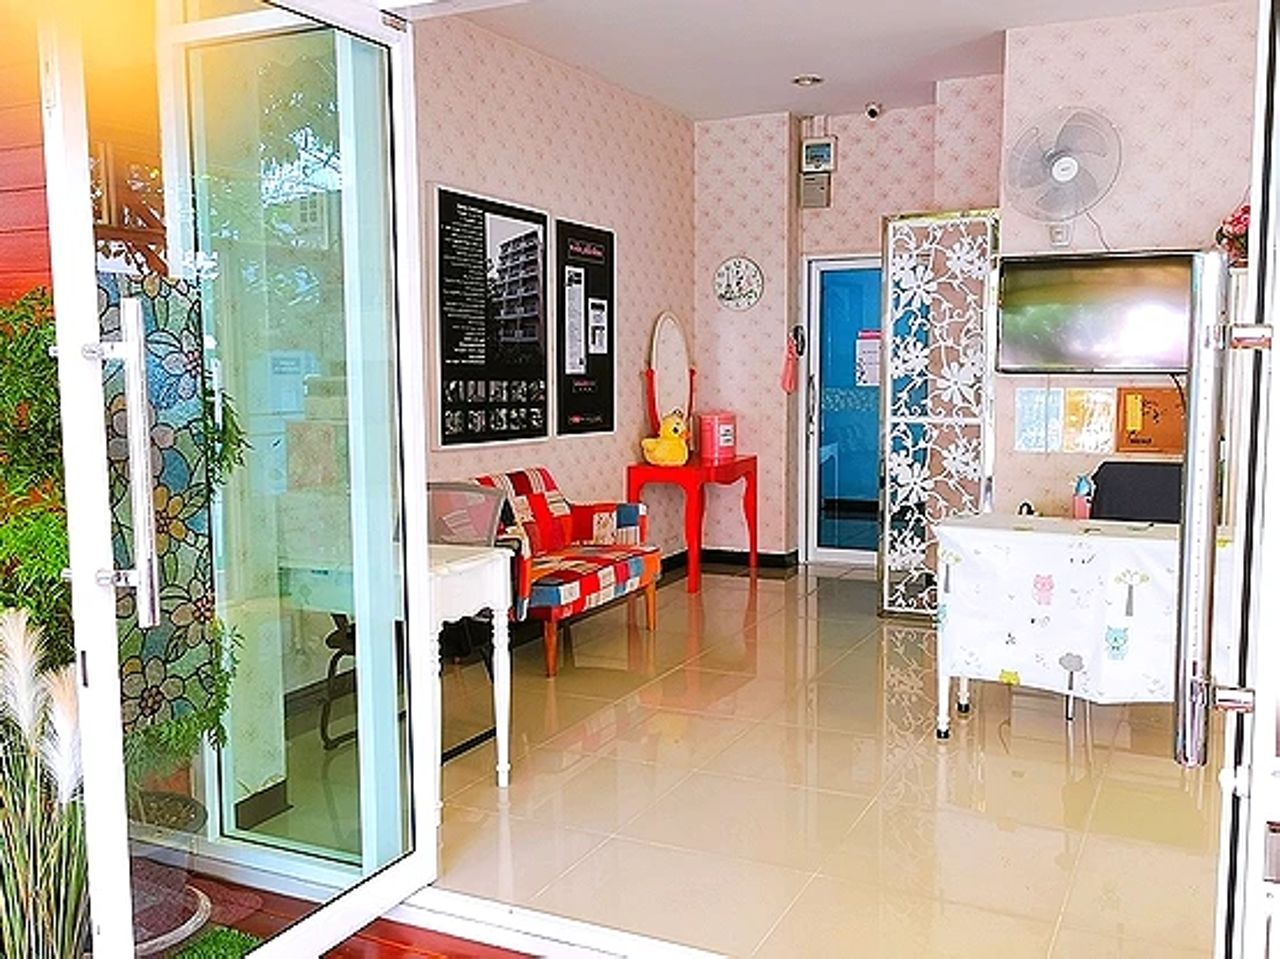 รูปภาพเพิ่มเติม บ้านสีชมพู-หอหญิง - Baan-See-Chompoo - ลำดับที่ 2